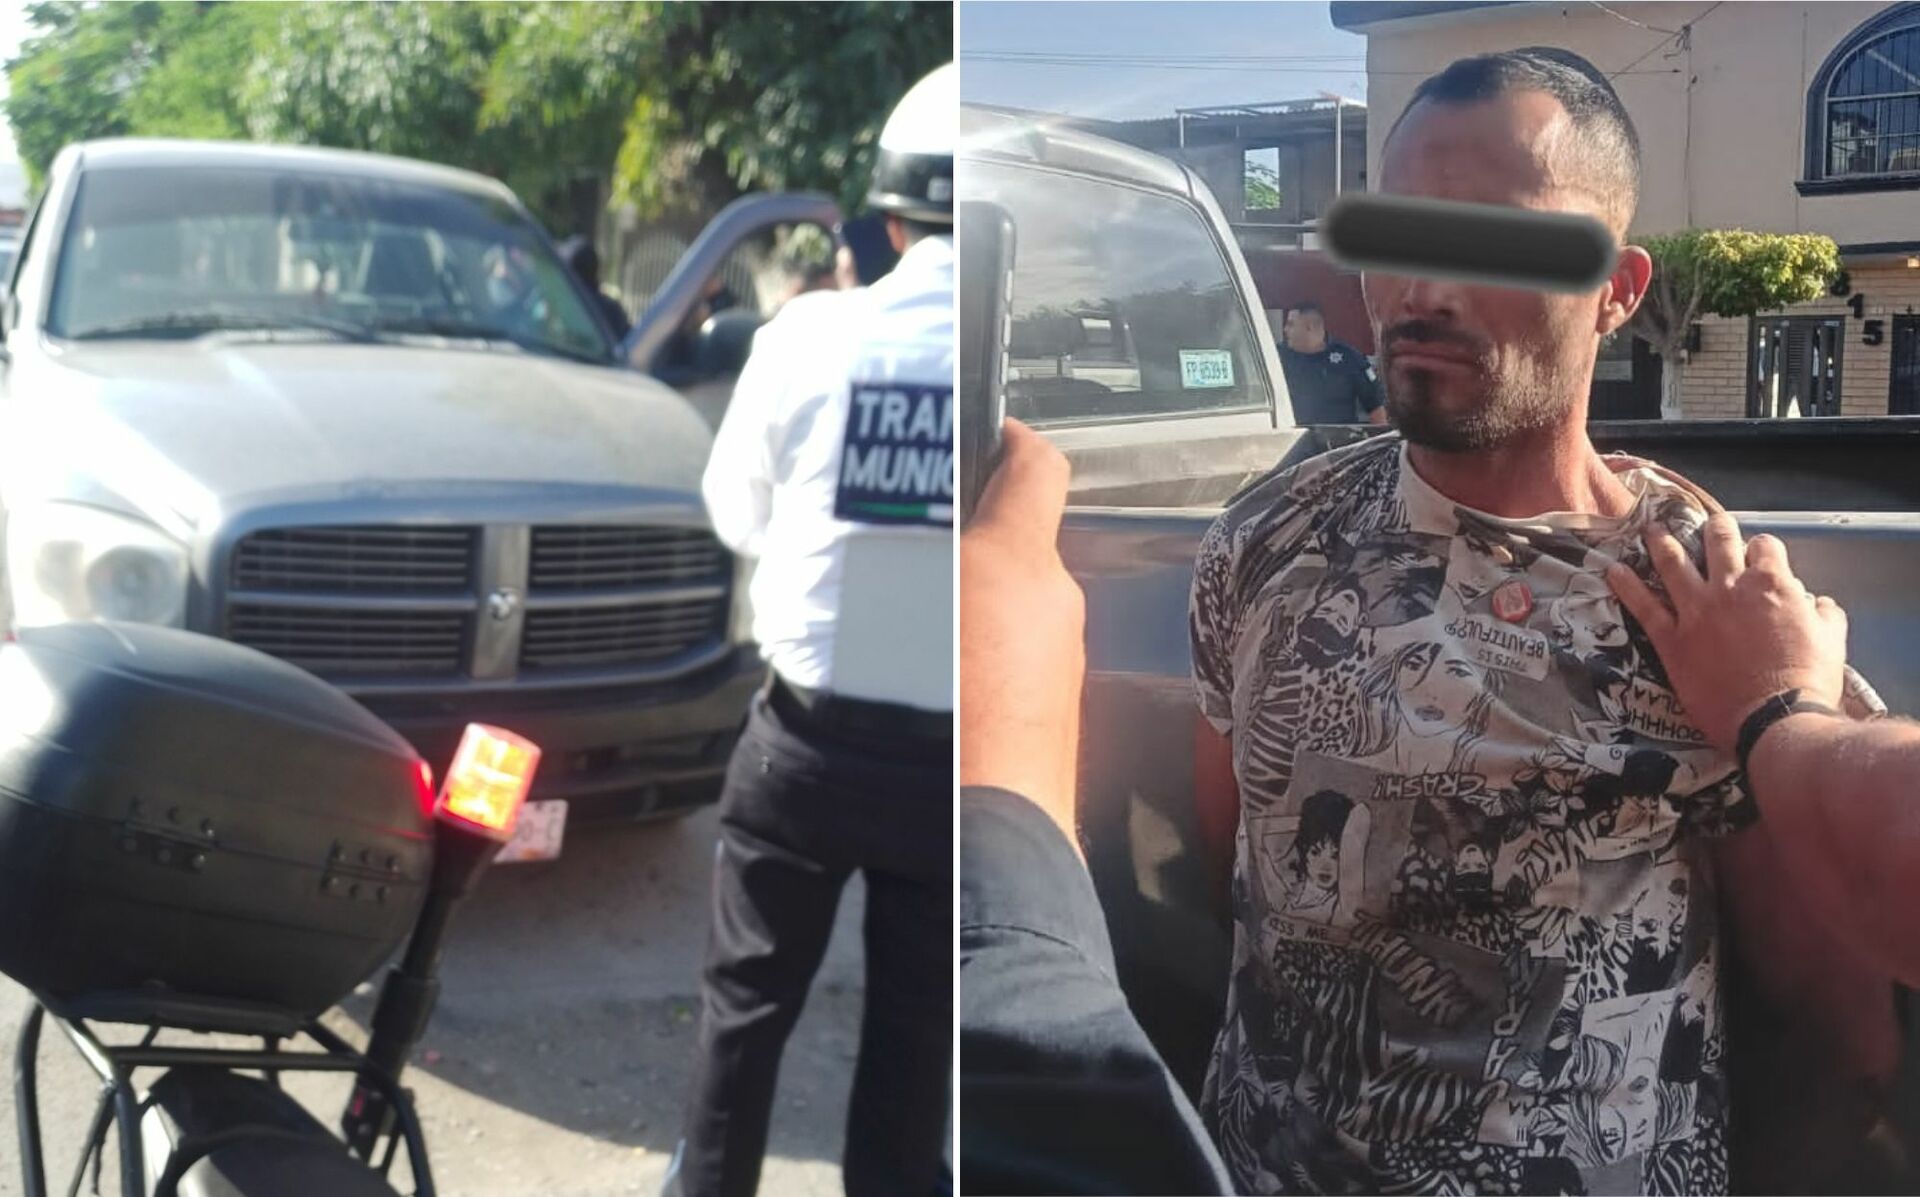 Este miércoles, se registró el robo de un vehículo en la ciudad de Gómez Palacio, mismo que fue recuperado minutos más tarde en la colonia Santa Rosa y se logró la detención del responsable.